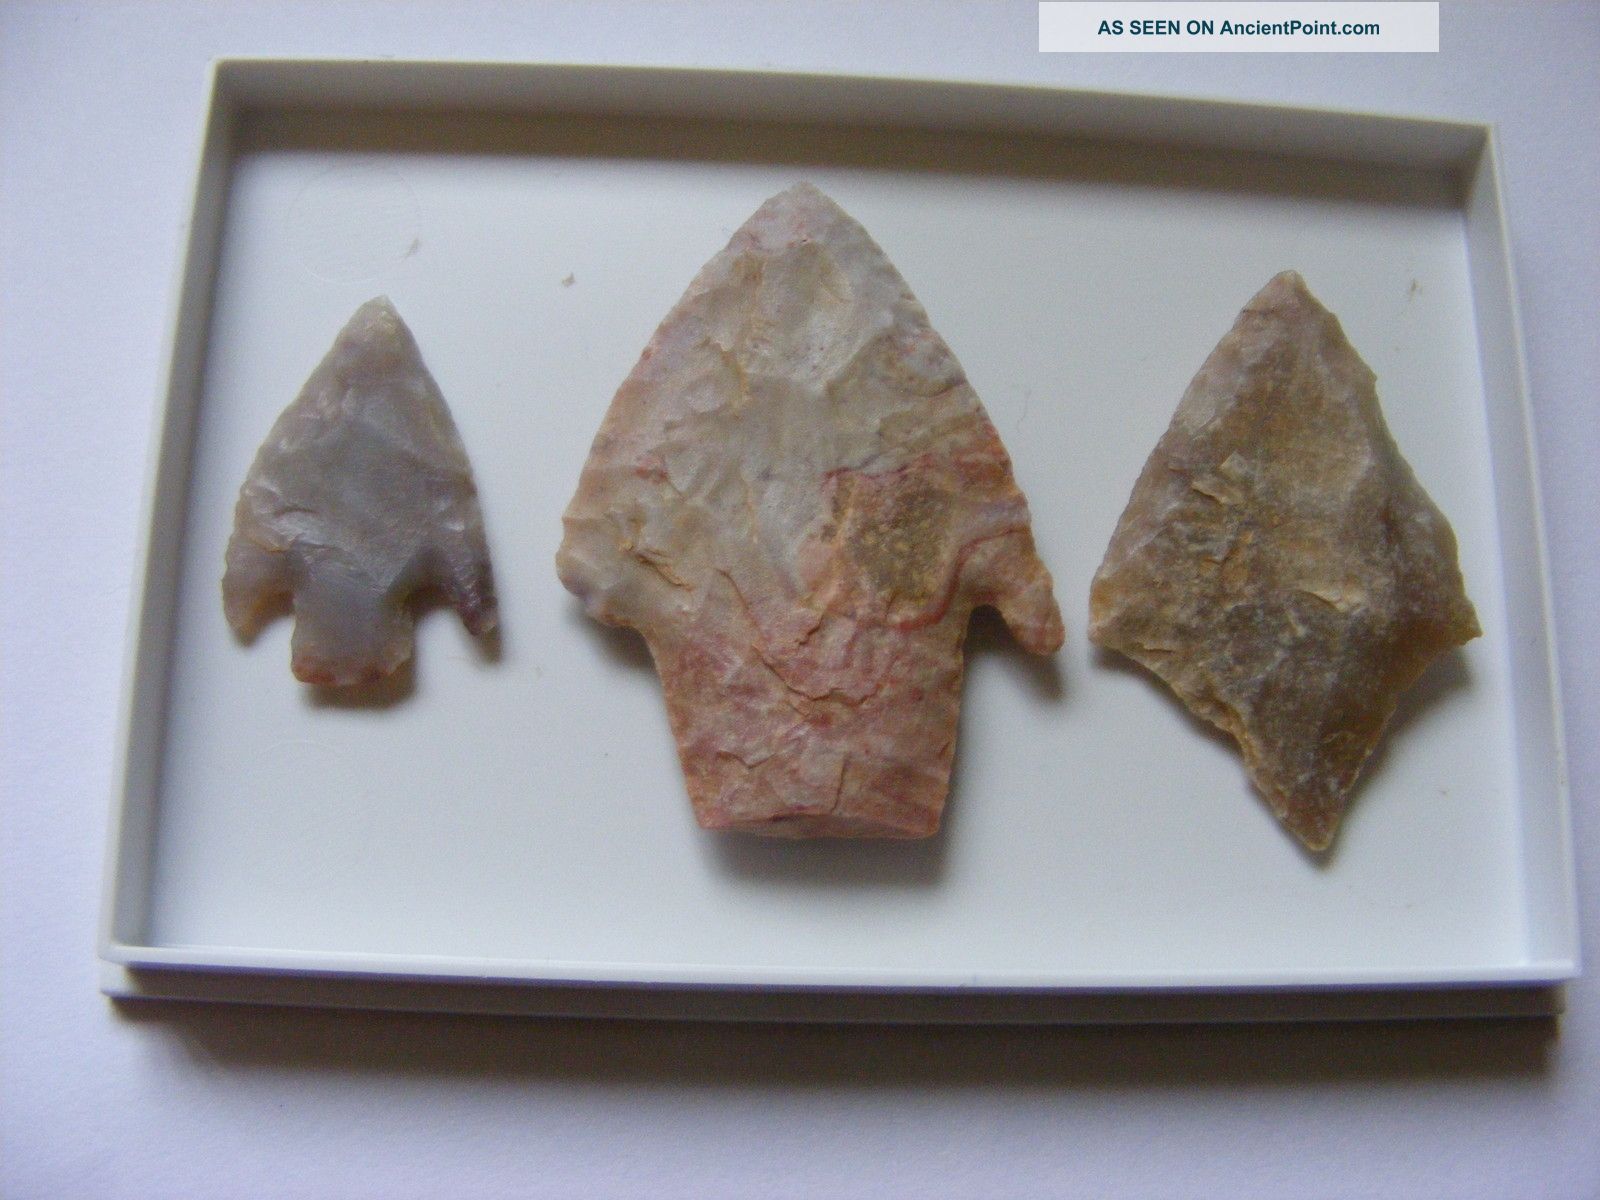 Set Of 3 Neolithic Arrowheads (1) - C3000 Bc Neolithic & Paleolithic photo